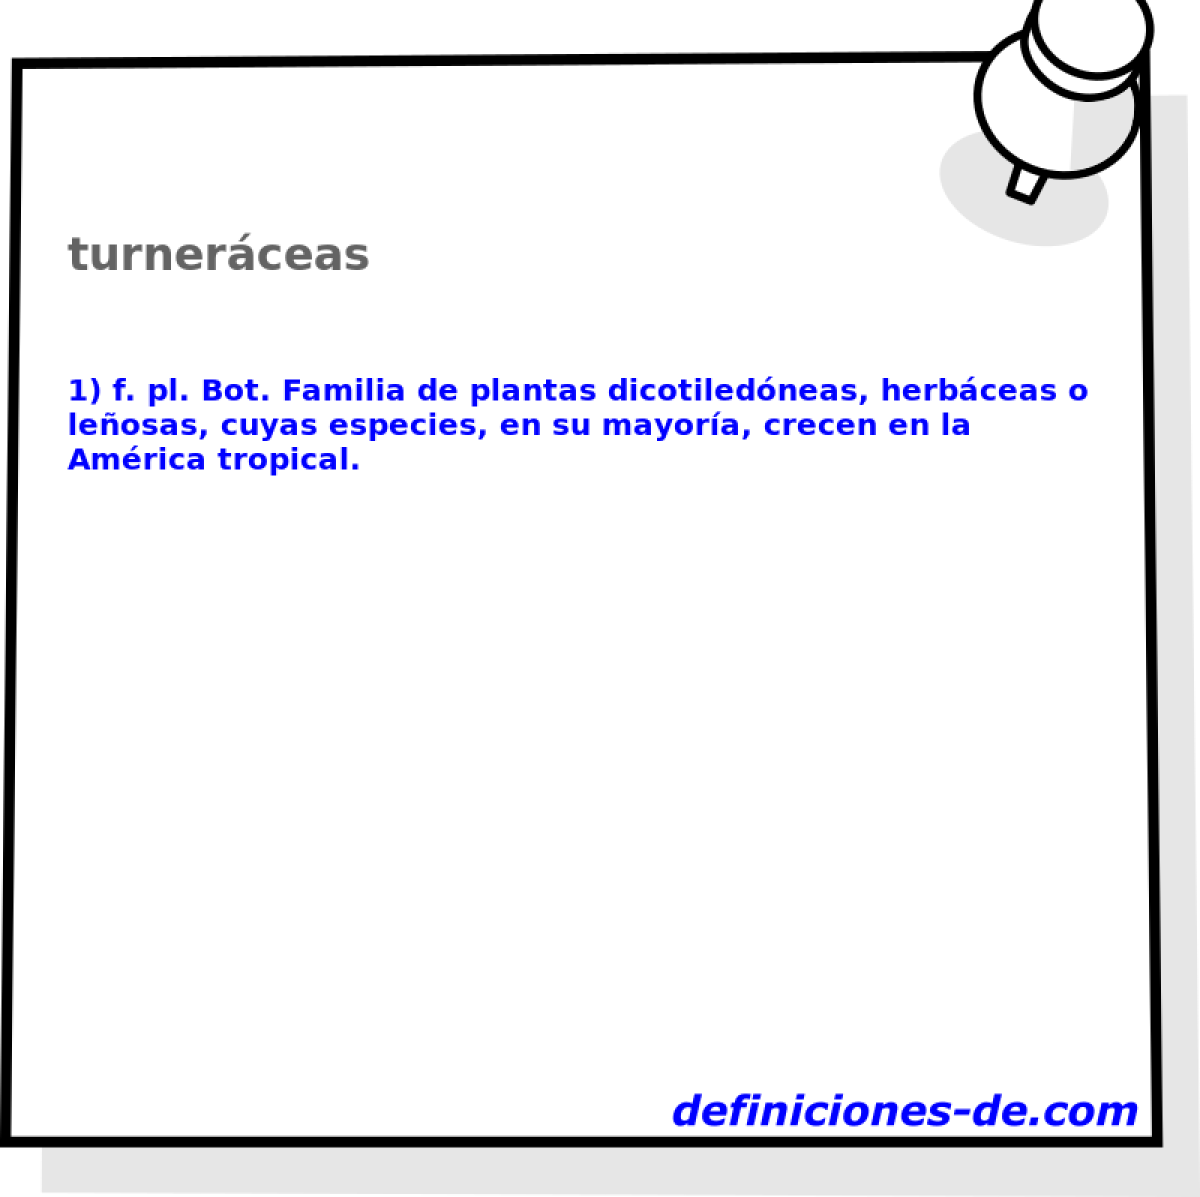 turnerceas 